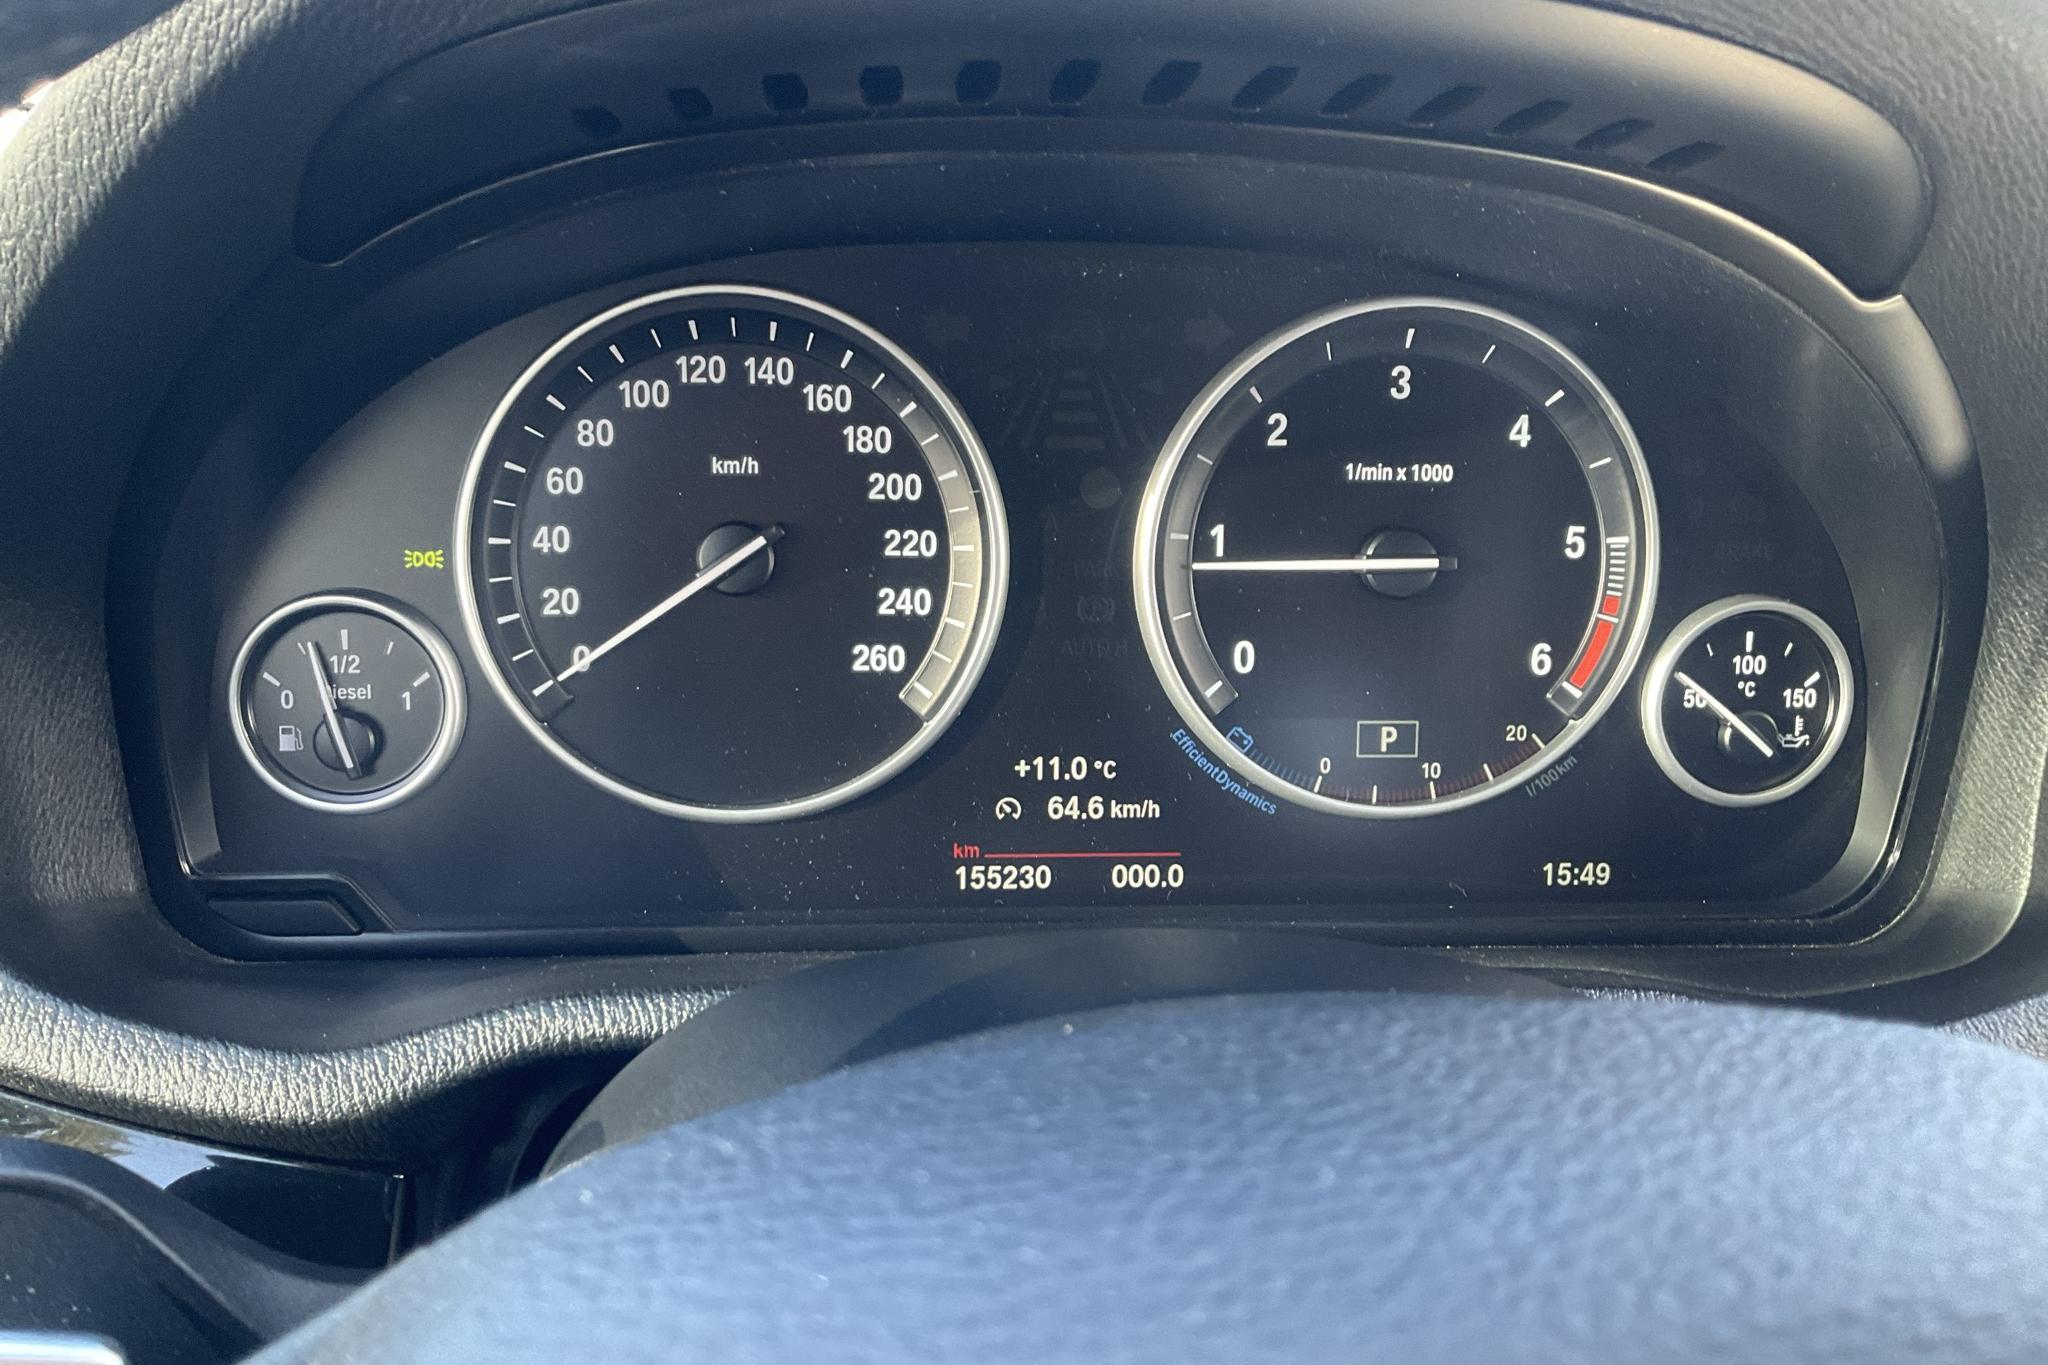 BMW X4 xDrive 20d, F26 (190hk) - 15 524 mil - Automat - svart - 2018